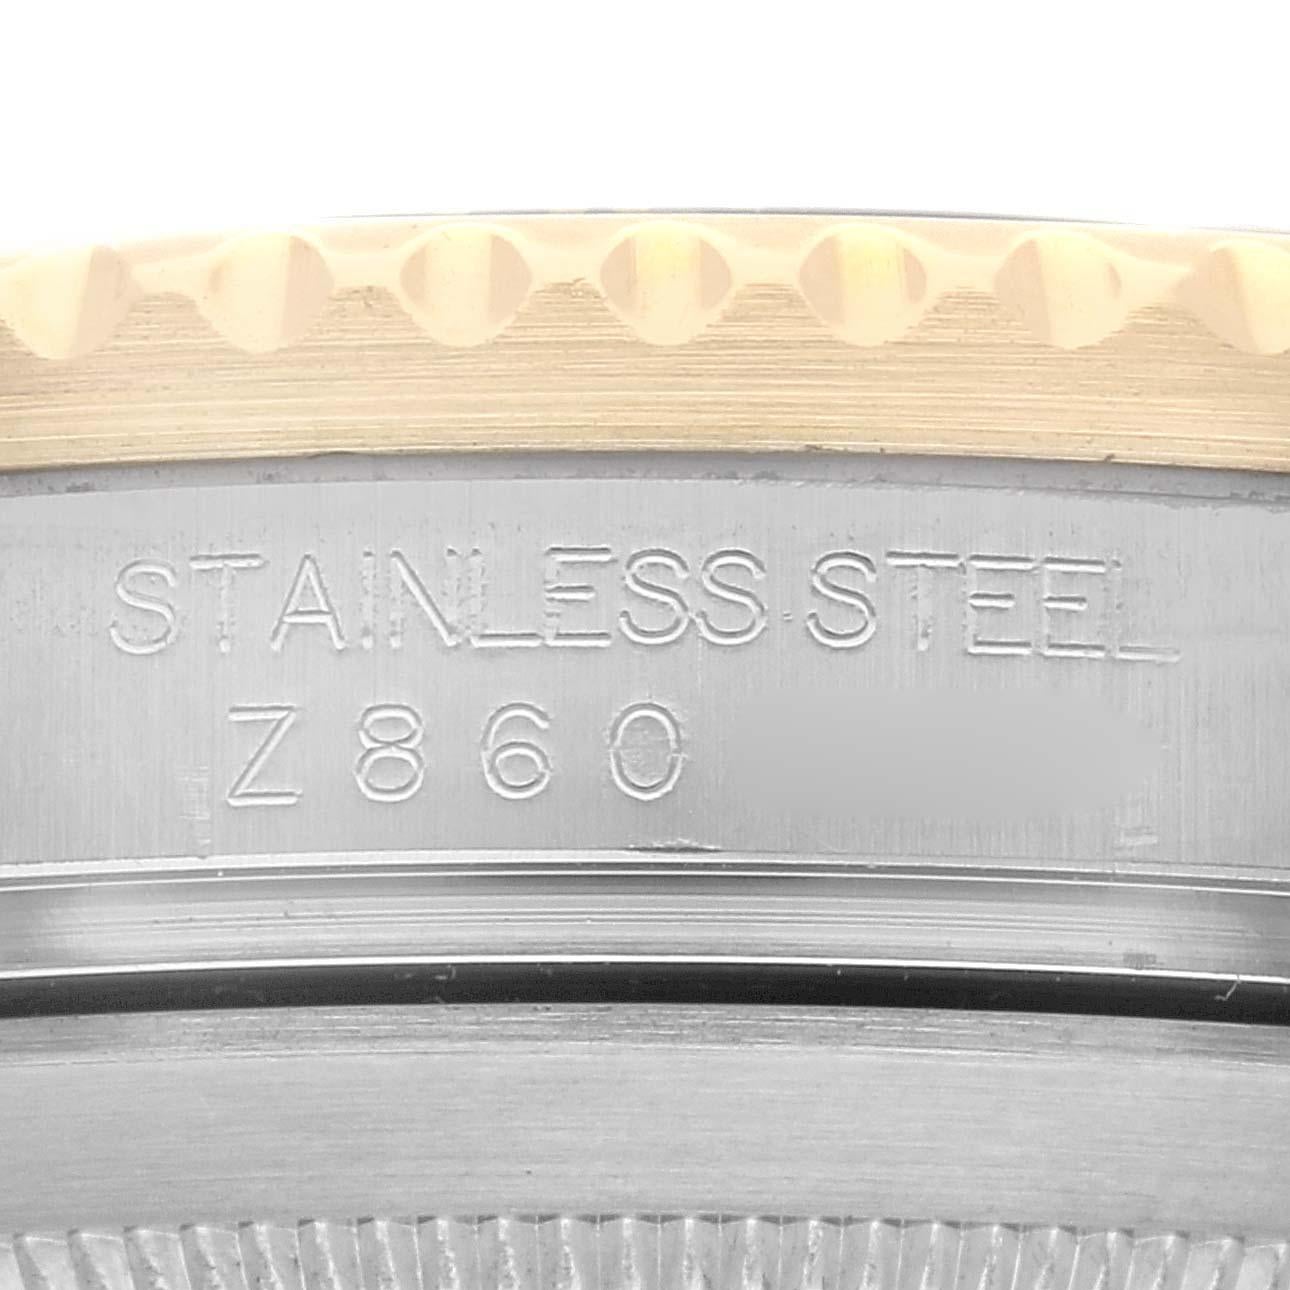 Rolex Submariner Steel Gold Diamond Sapphire Serti Dial Mens Watch 16613. Mouvement automatique à remontage automatique, officiellement certifié chronomètre. Boîtier en acier inoxydable et or jaune 18k de 40 mm de diamètre. Logo Rolex sur la